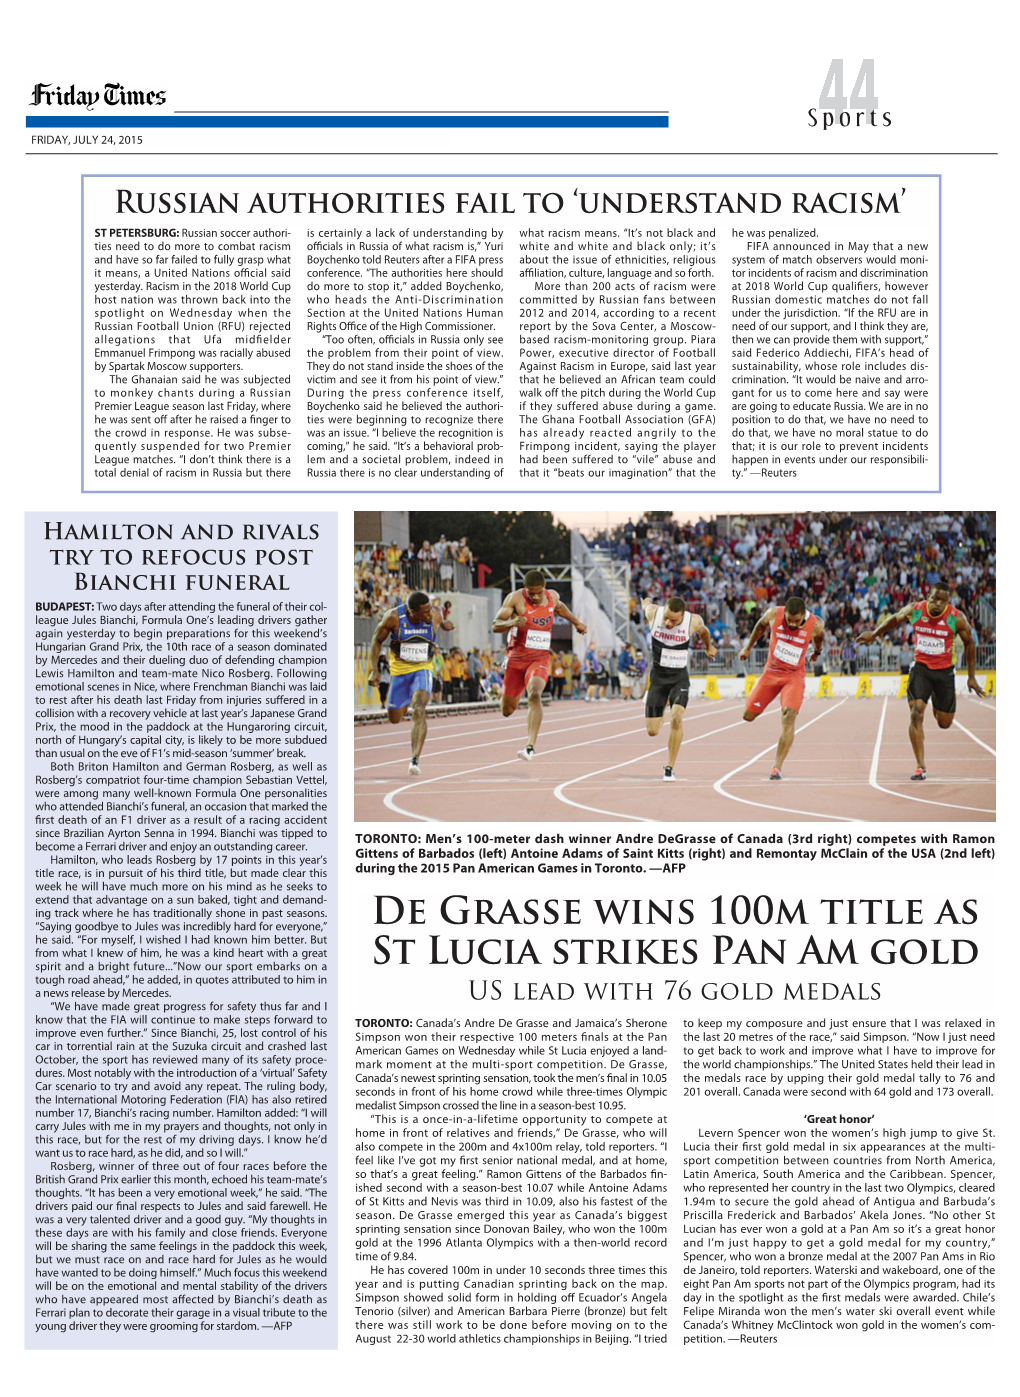 De Grasse Wins 100M Title As St Lucia Strikes Pan Am Gold